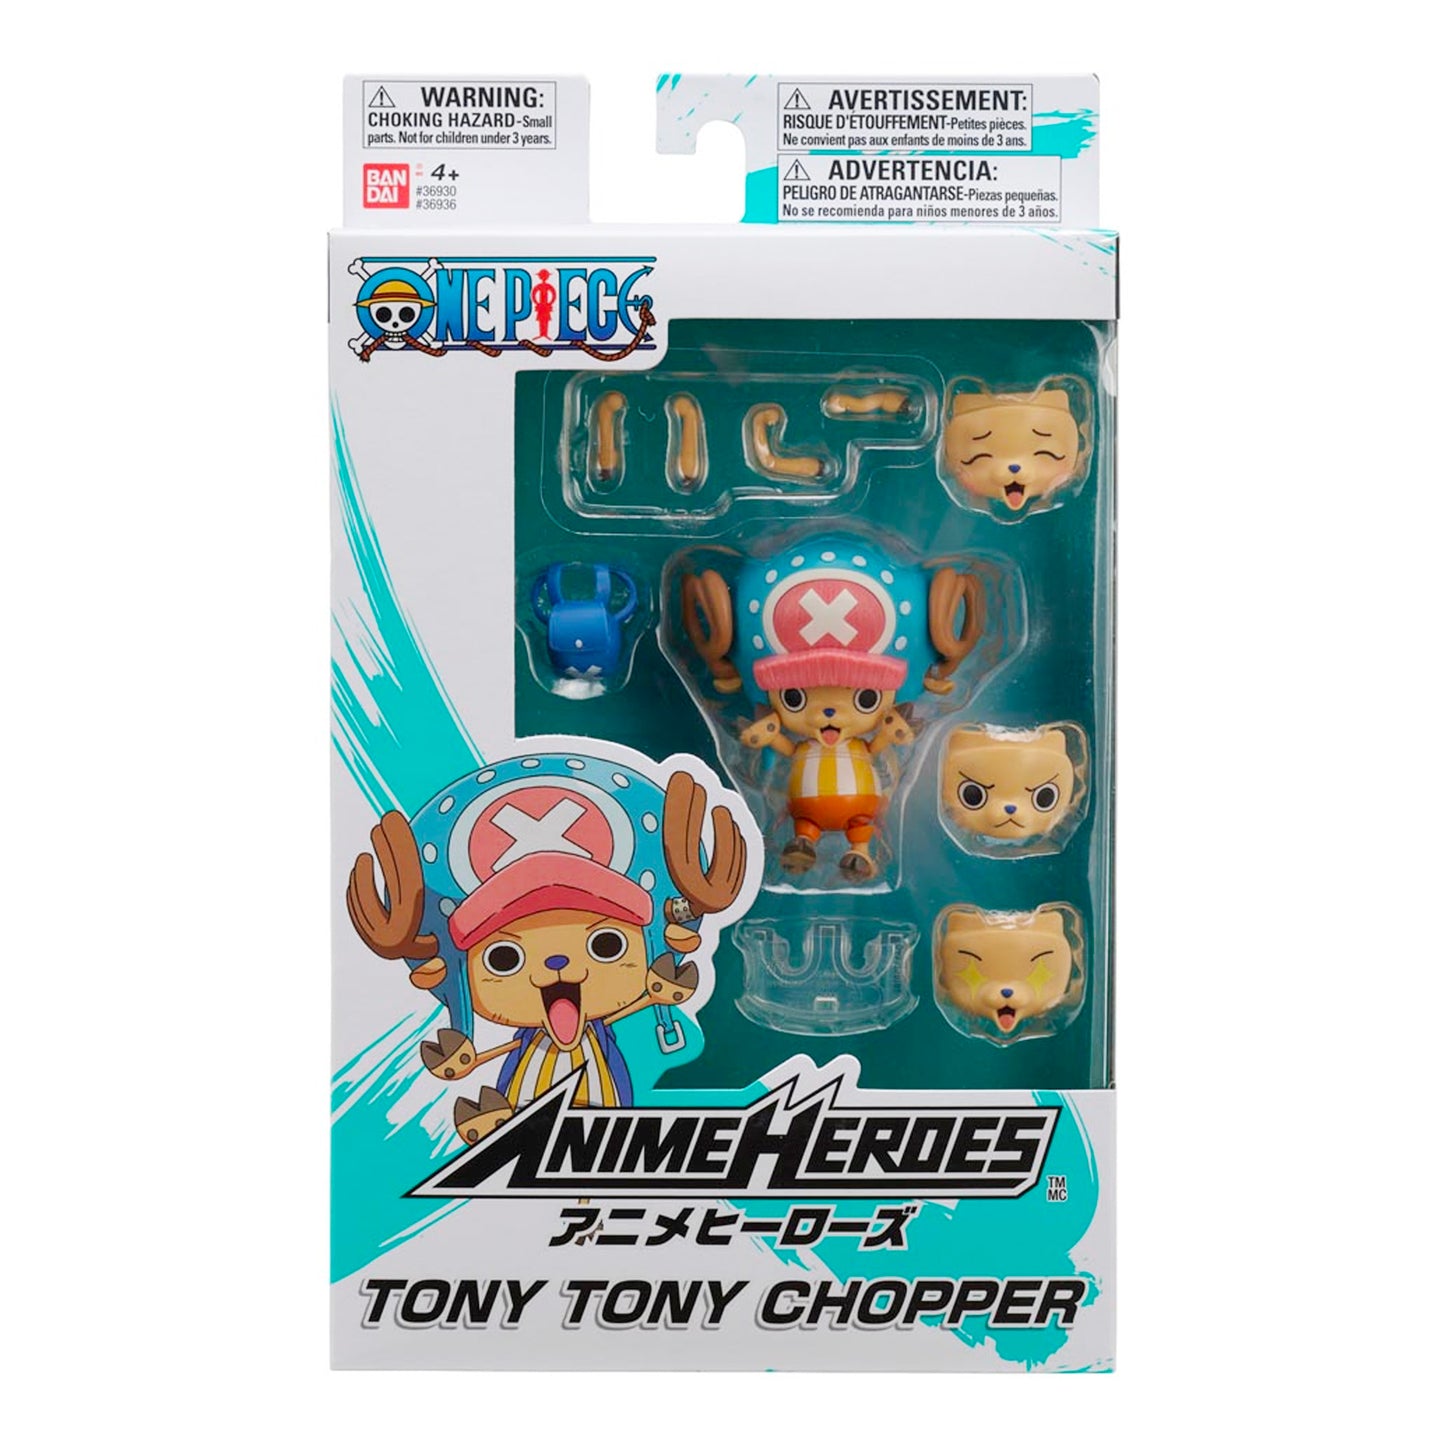 BandaI: Anime Heroes - One Piece - Tony Tony Chopper 6.5" Tall Action Figure